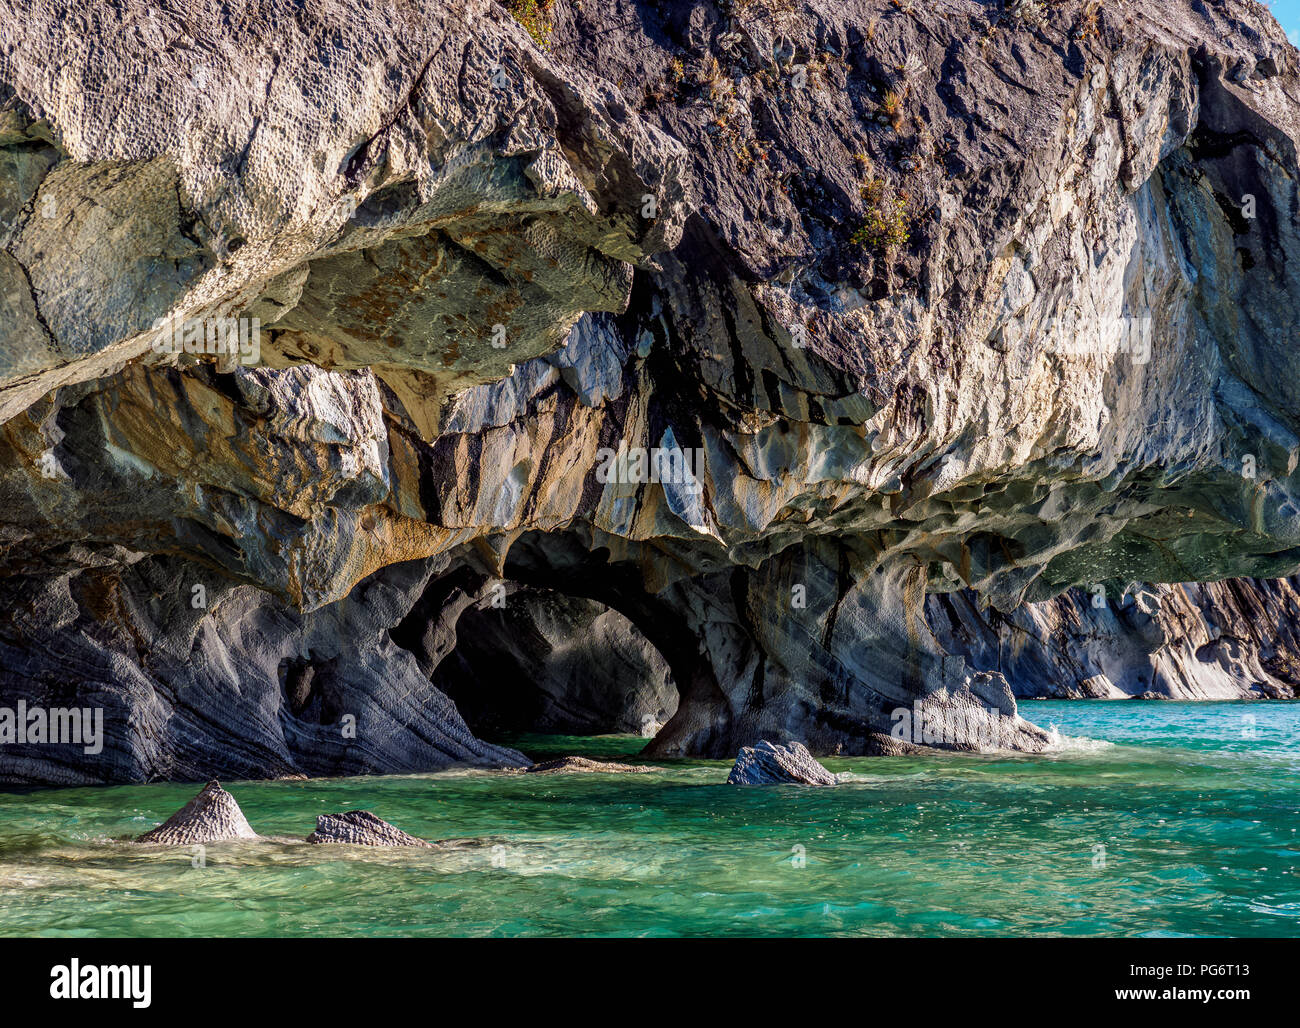 Marble Caves, Santuario de la Naturaleza Capillas de Marmol, General Carrera Lake, Puerto Rio Tranquilo, Aysen Region, Patagonia, Chile Stock Photo